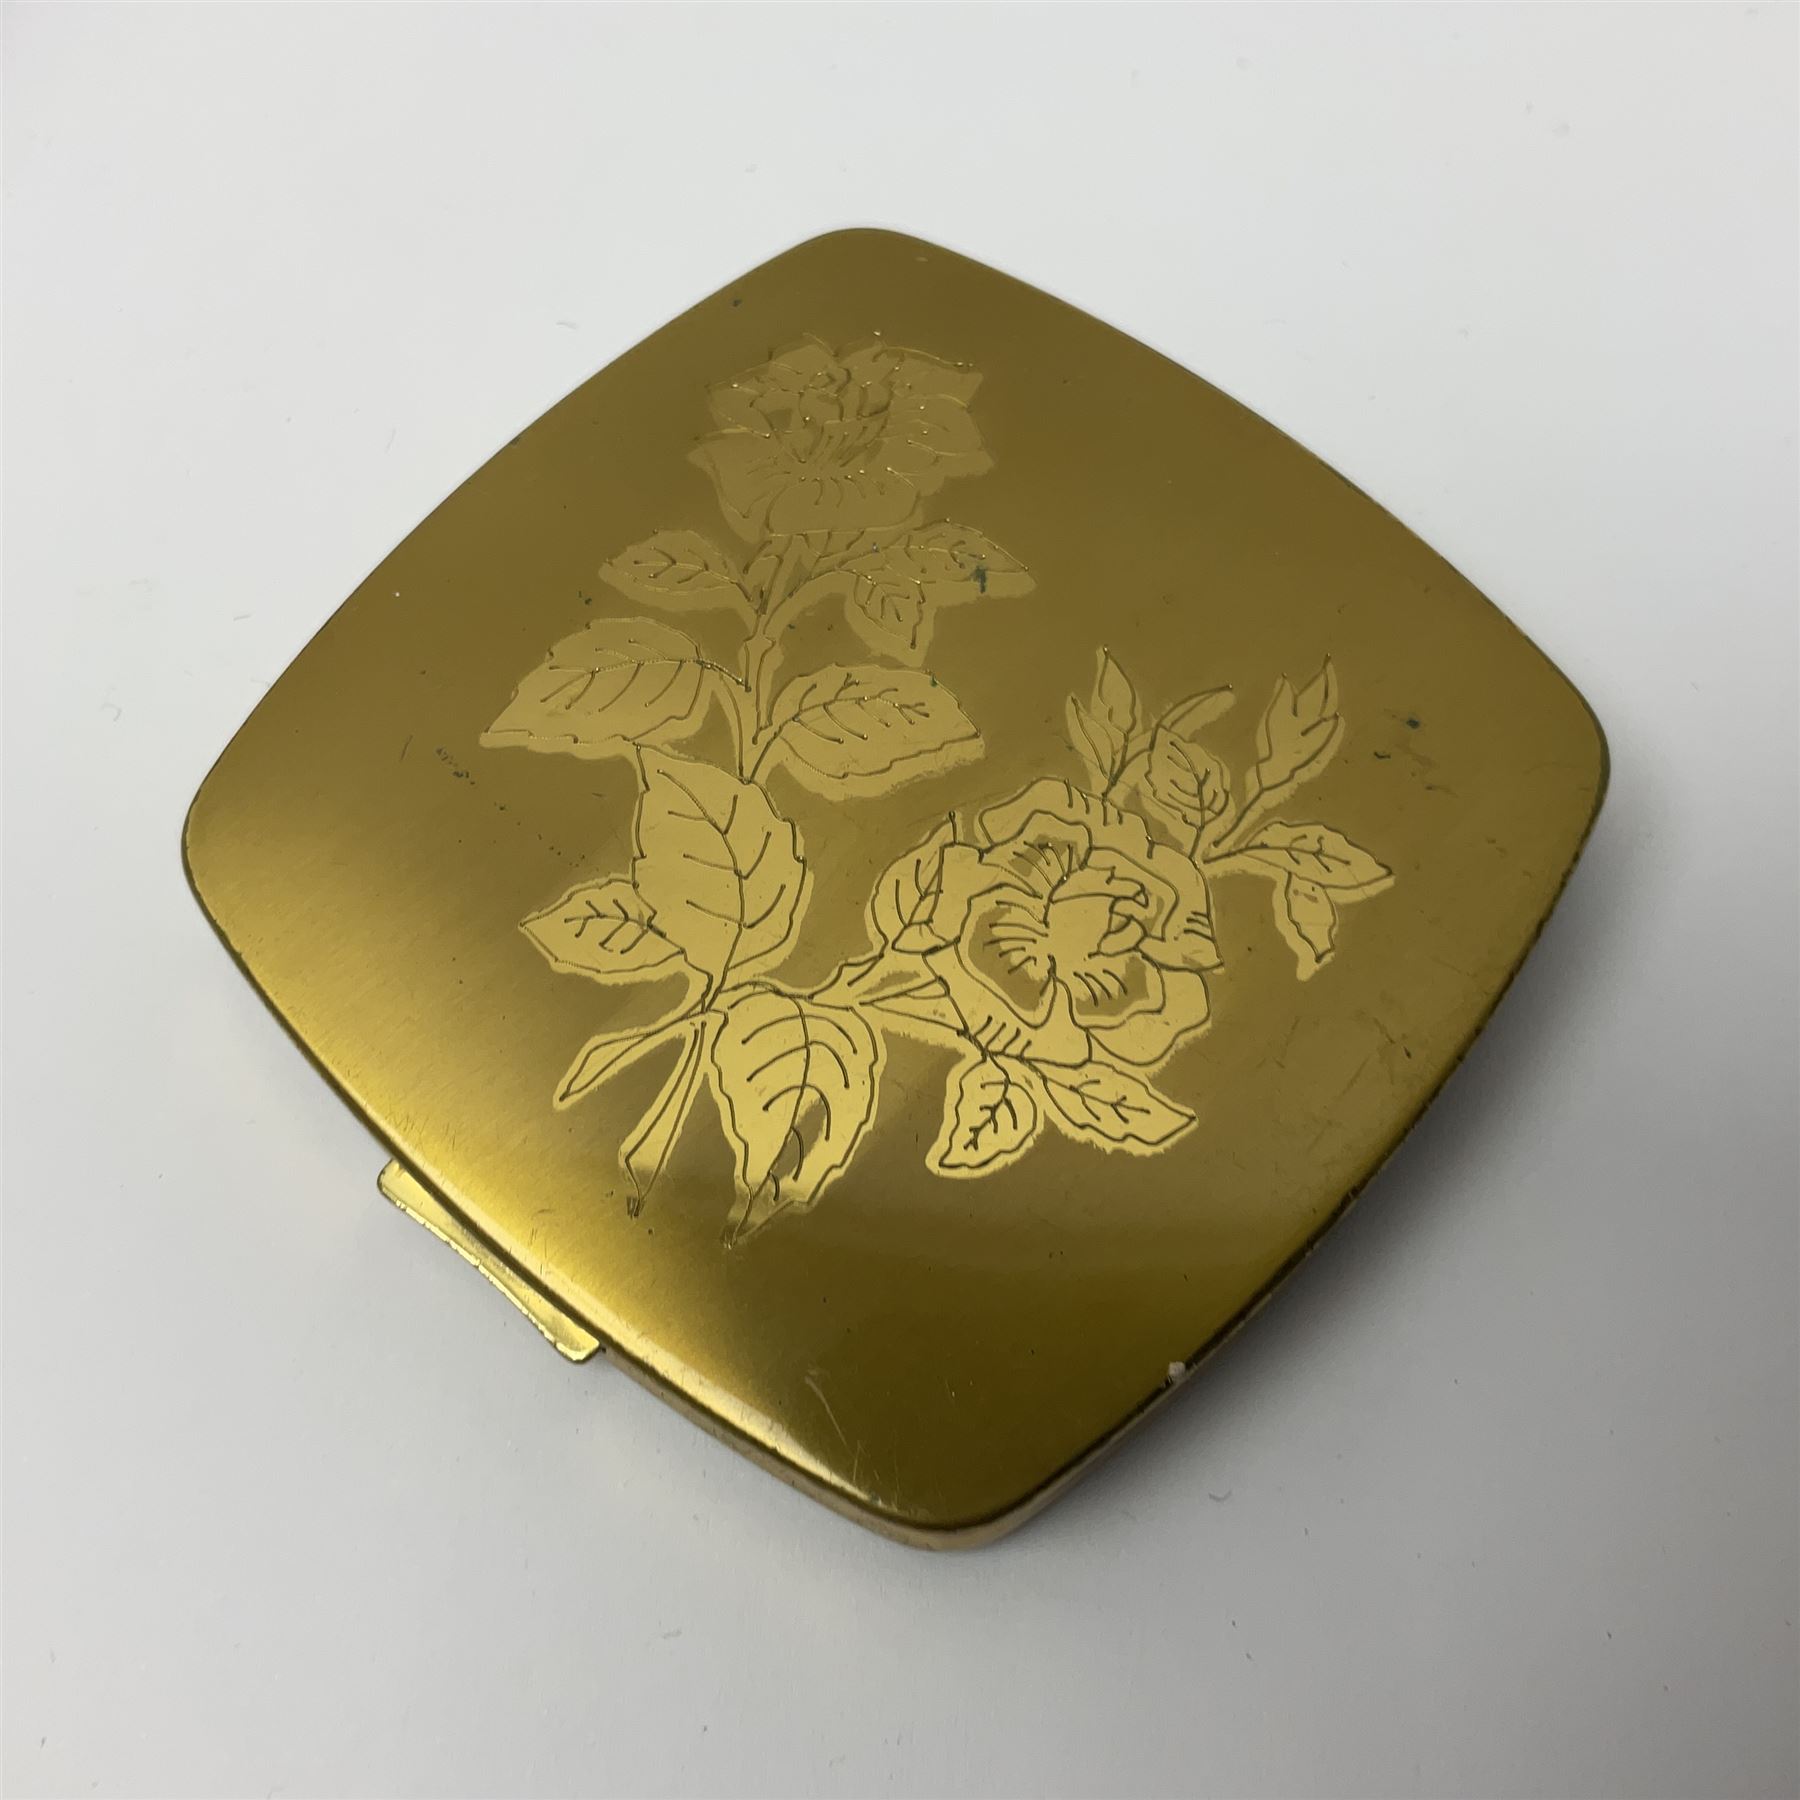 St Dupont gold plated cigarette lighter - Image 12 of 13